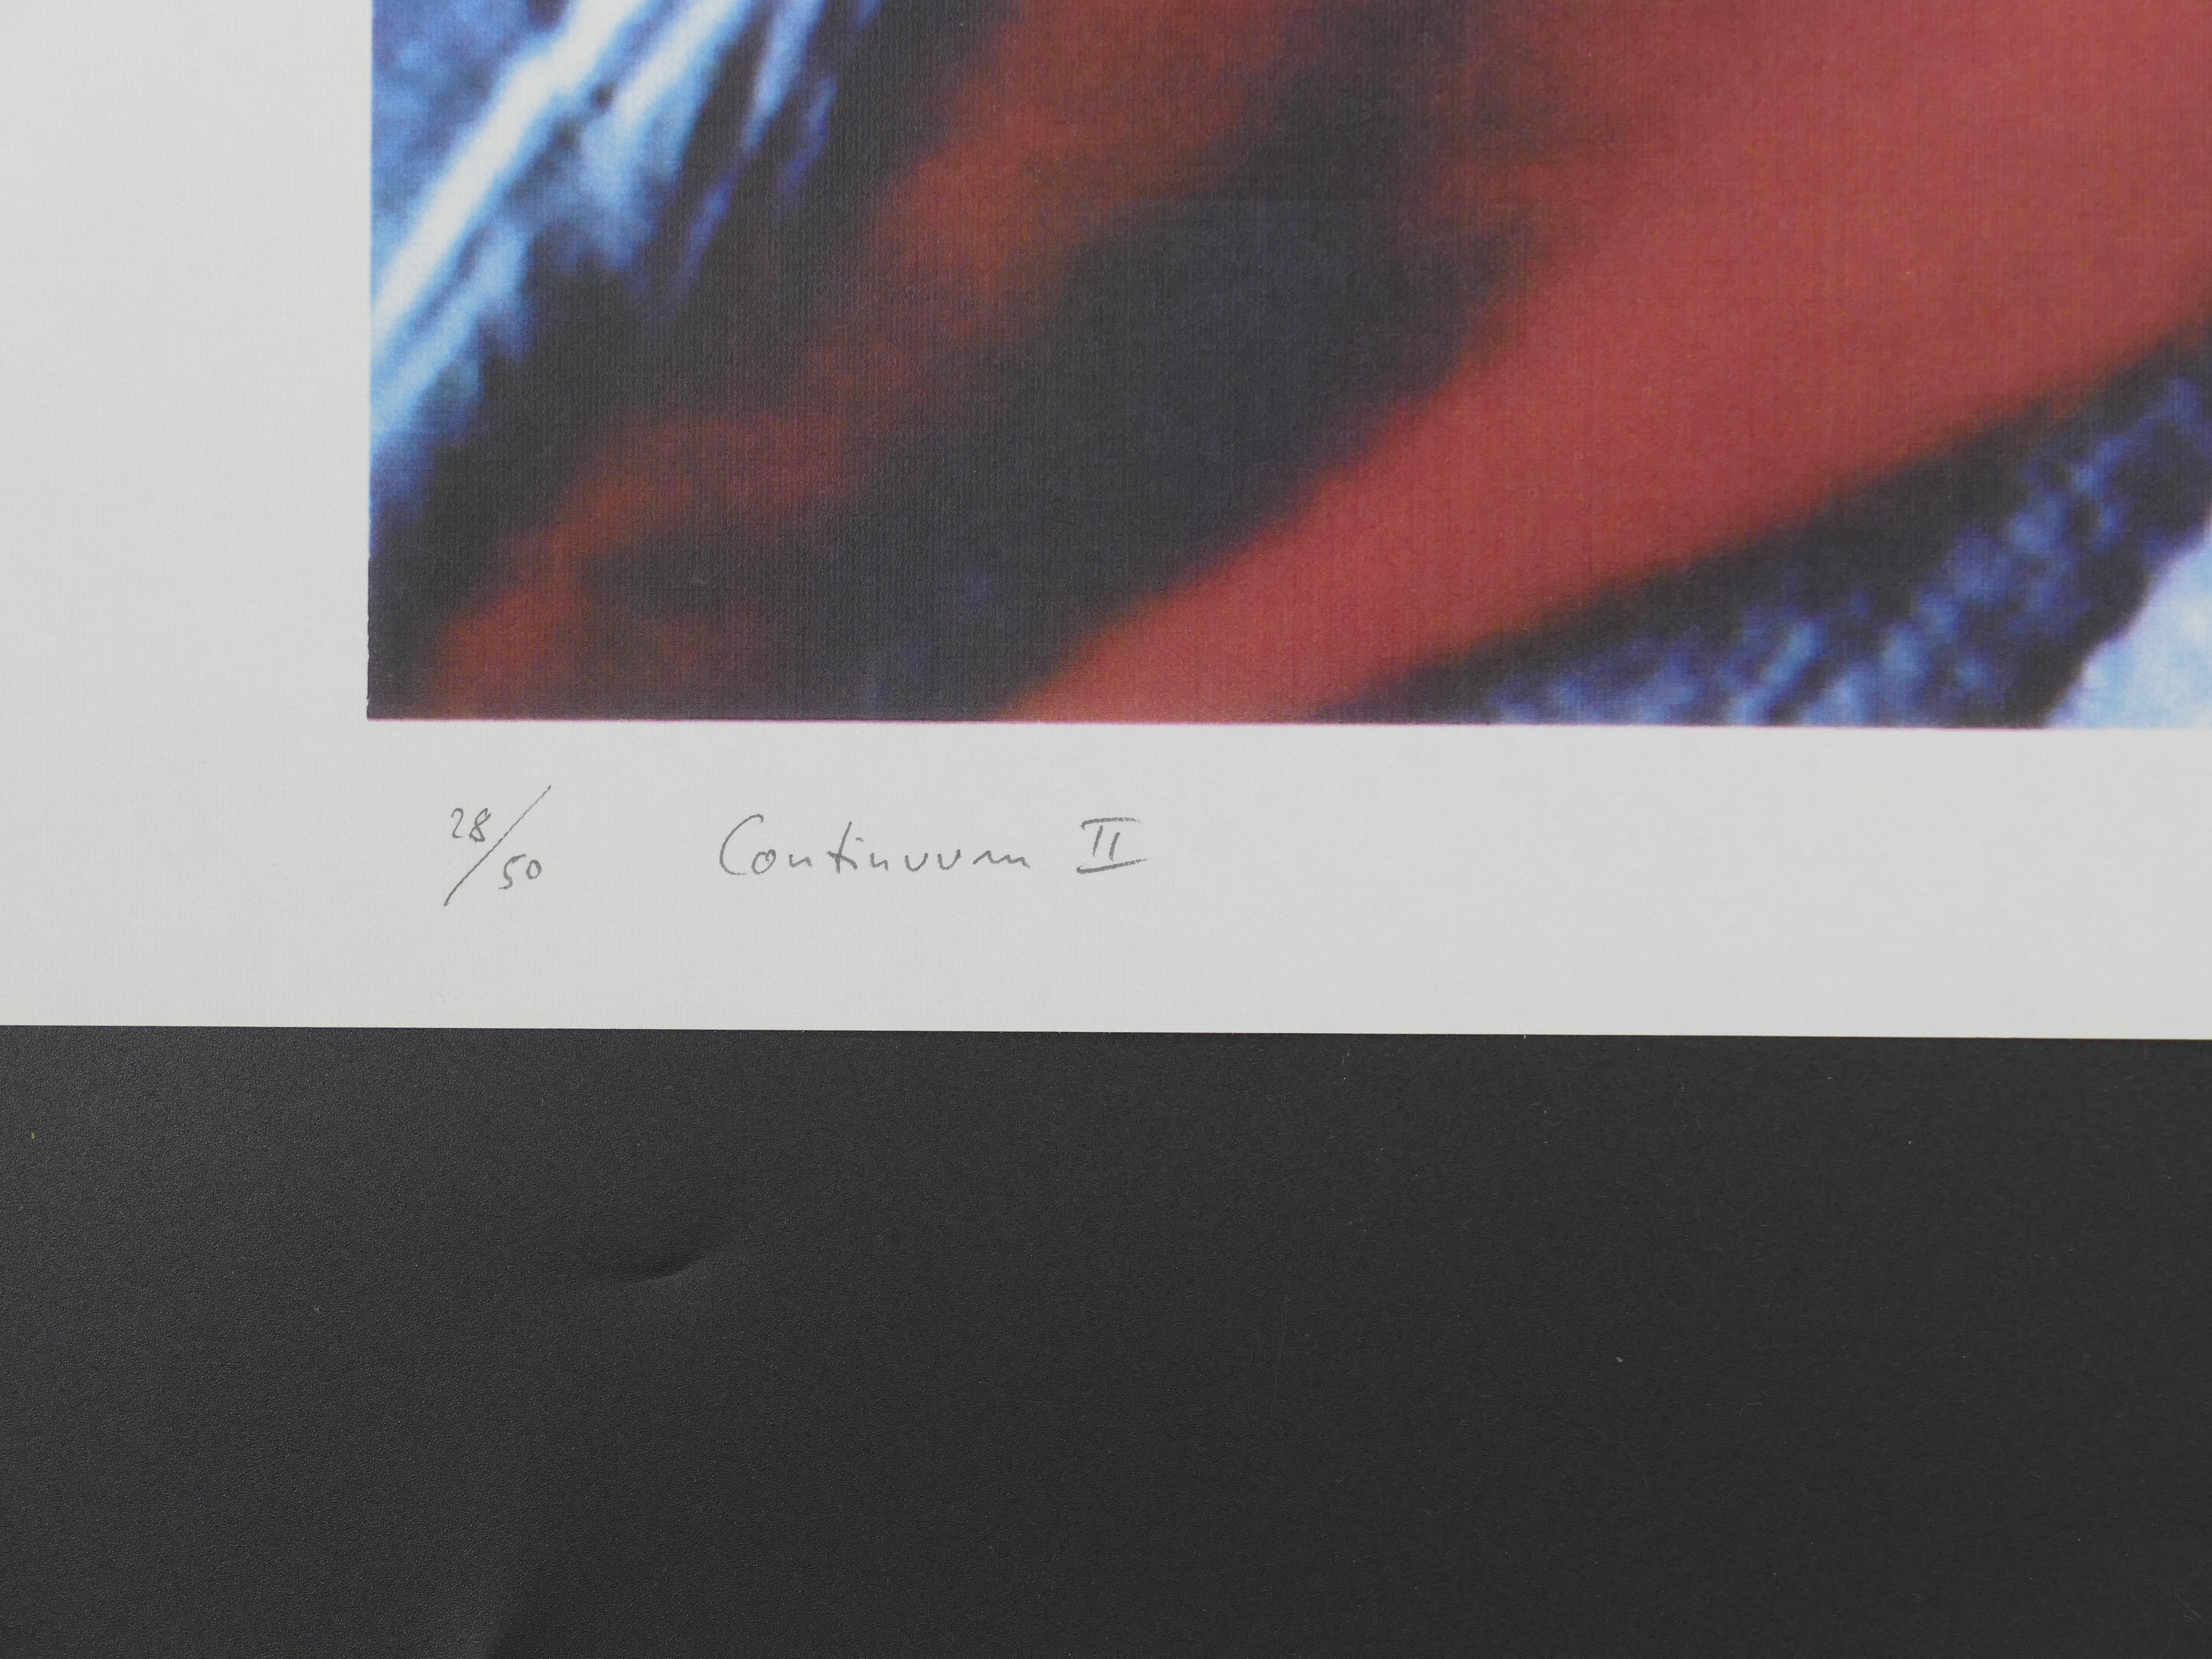 Continuum II - Original Color Photograph by Jan Verbeel - 1991 2